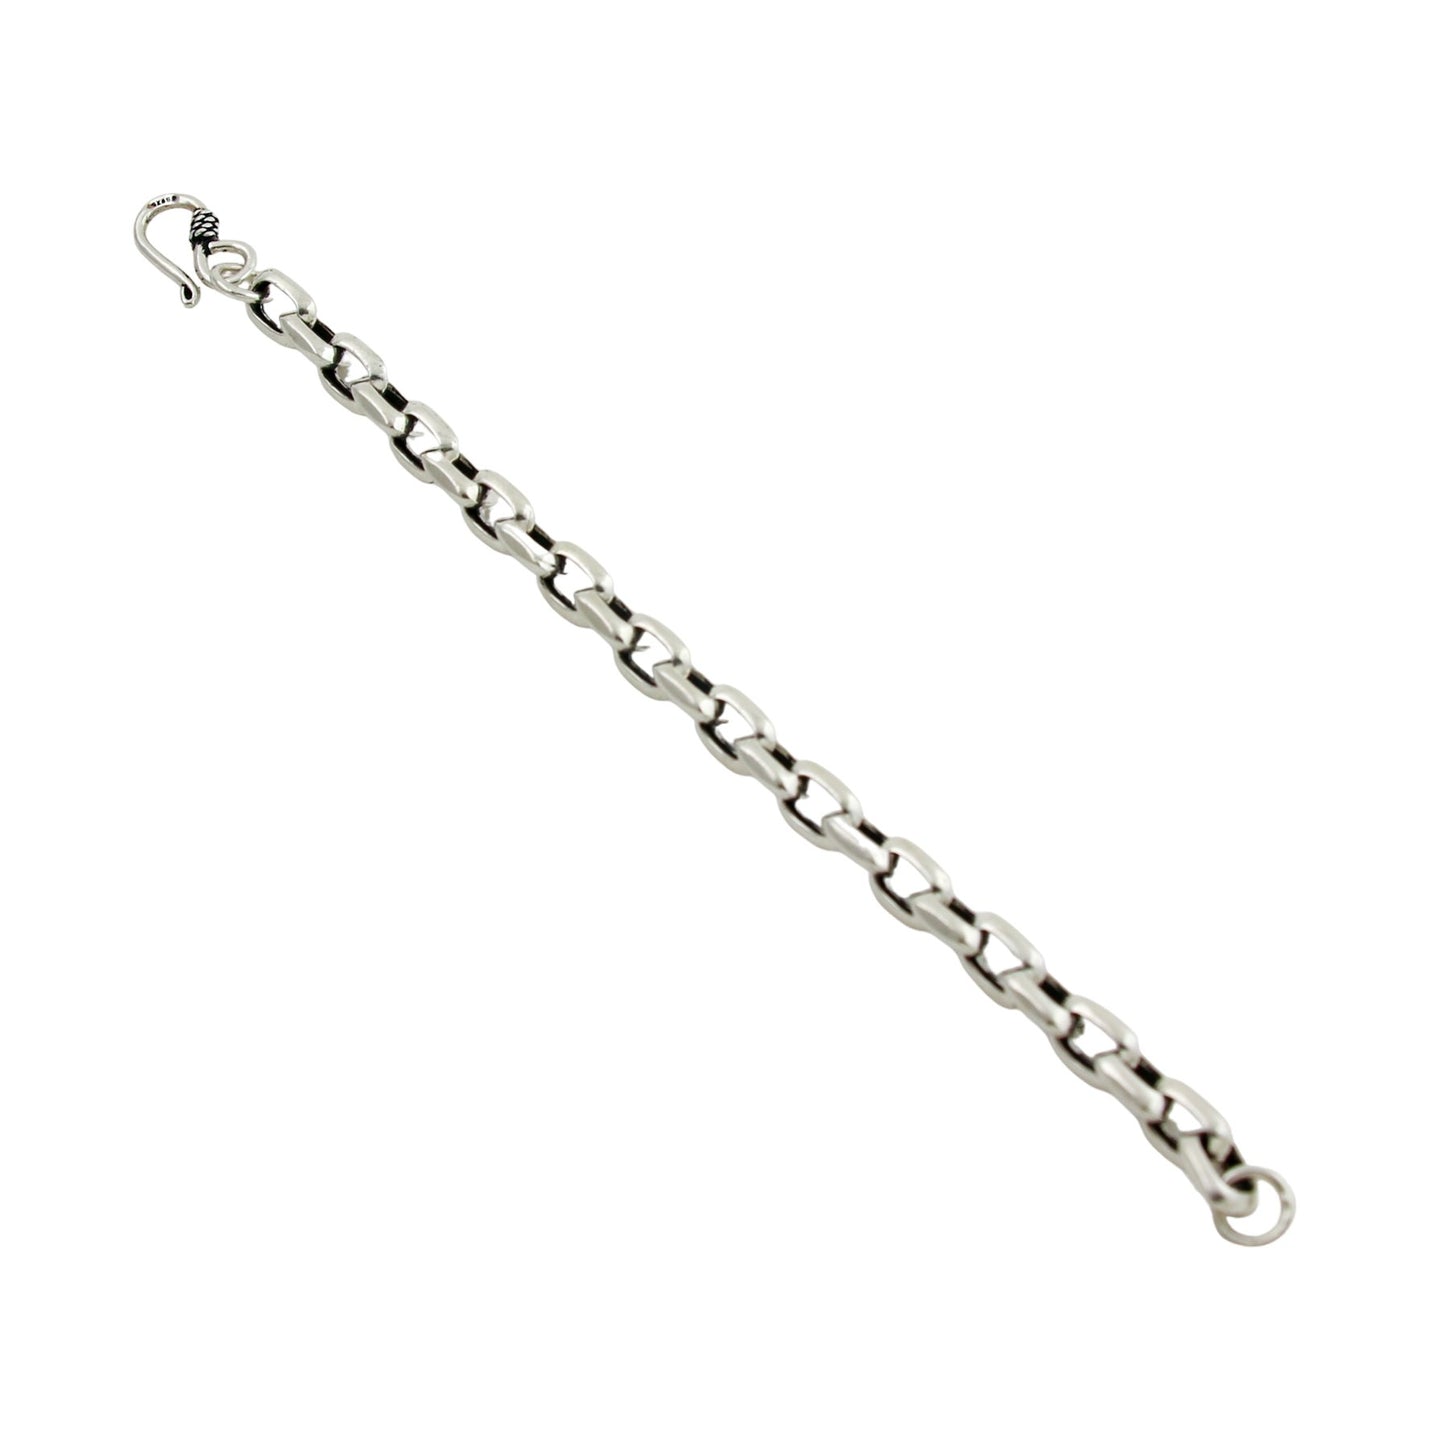 Silver Chain Link Bracelet - Kingdom Jewelry